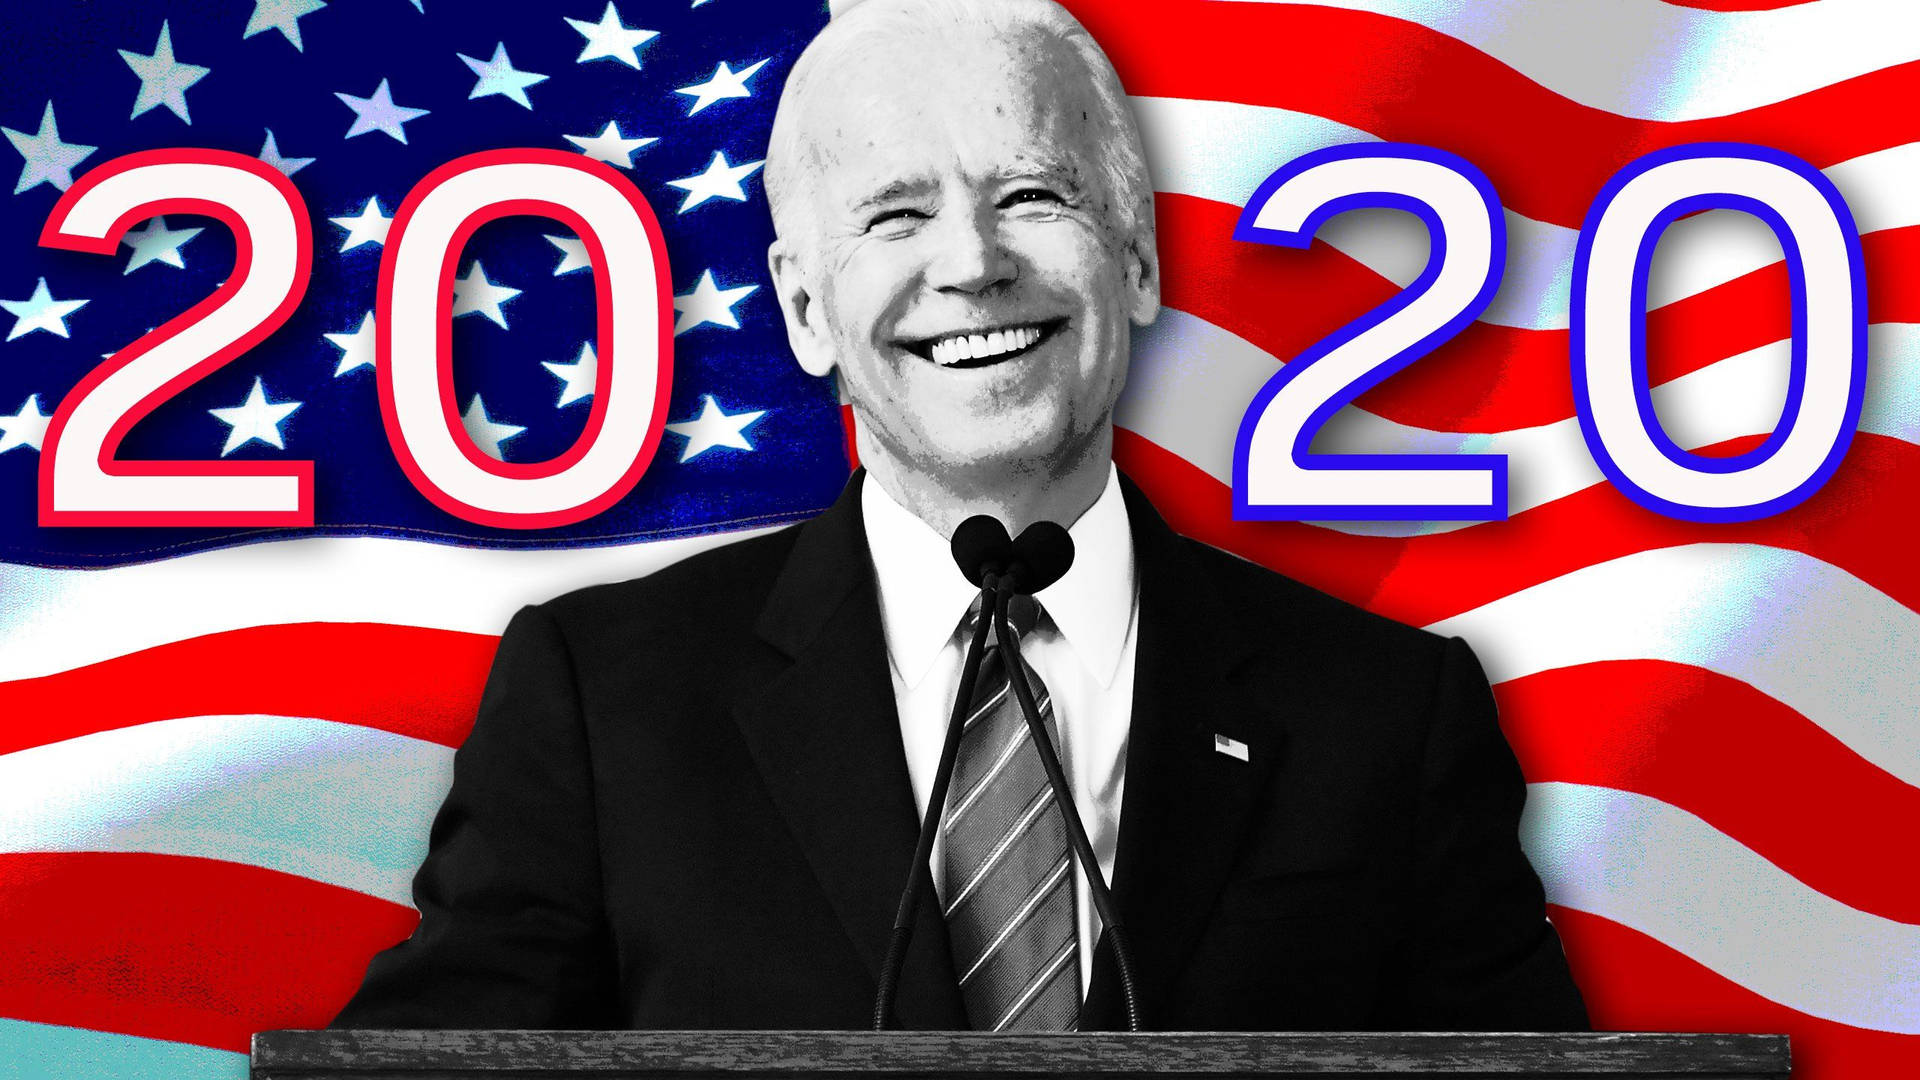 Joe Biden Elections Poster In 2020